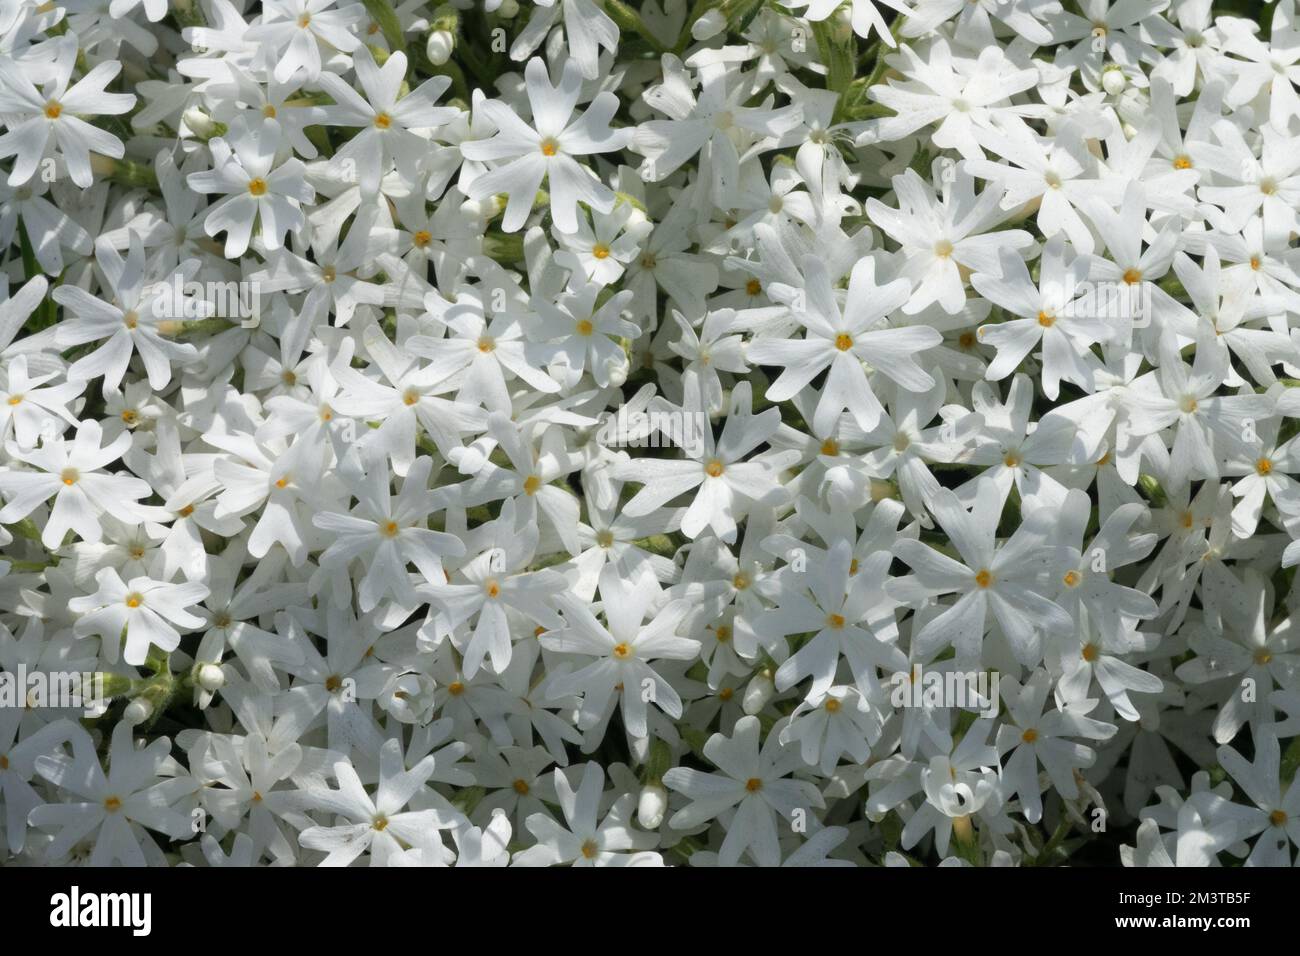 Phlox subulata Snowflake, Moss phlox, White, Creeping Phlox, Phlox Snowflake, Flowers Stock Photo